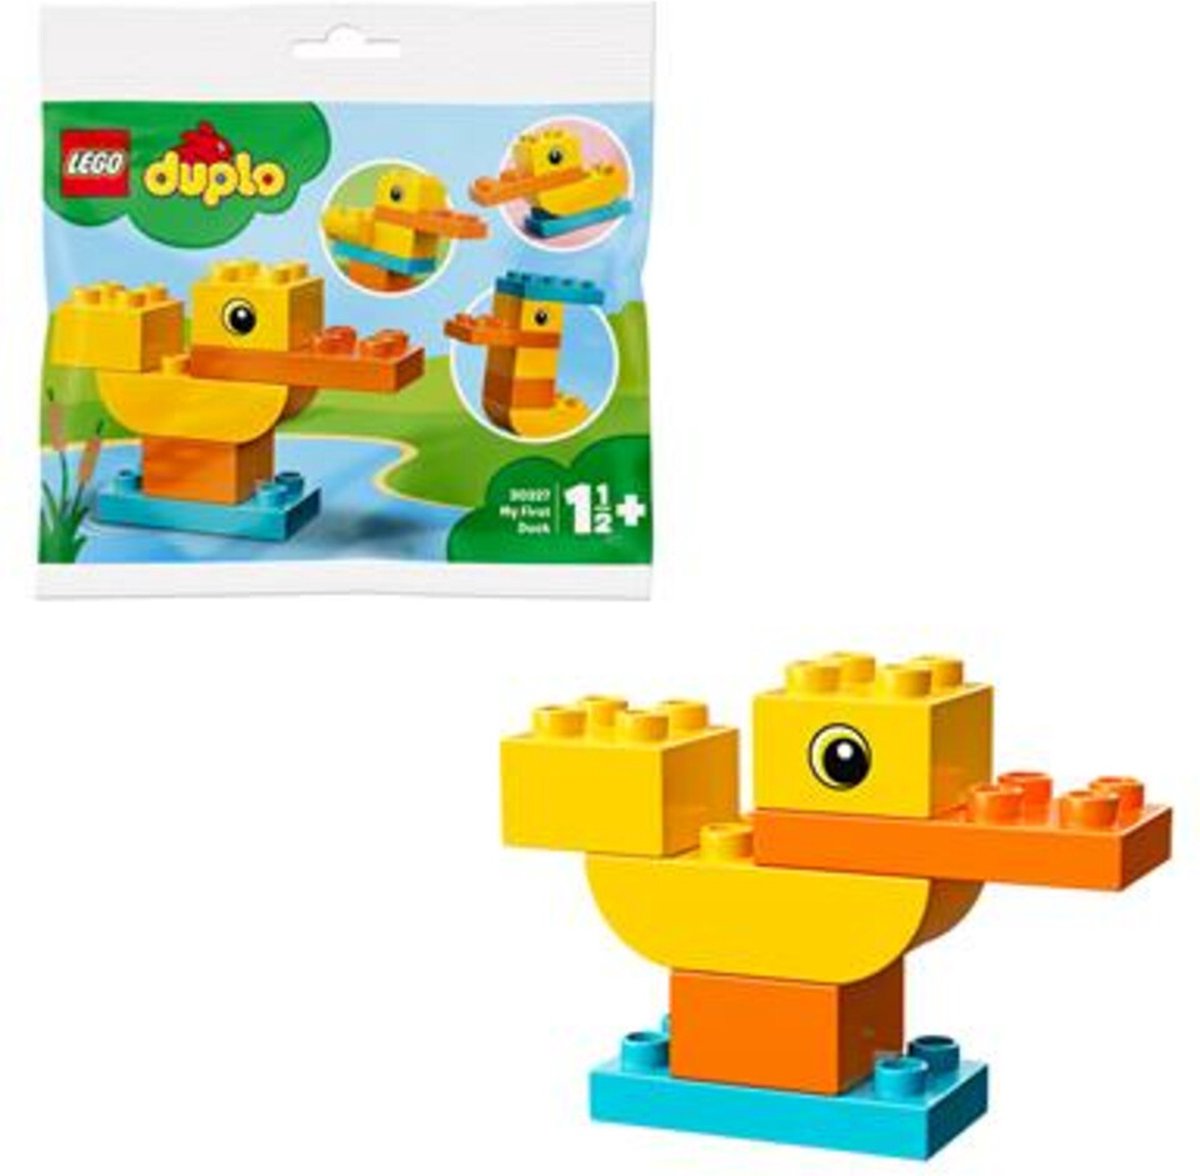 Lego Duplo - mijn eerst eend 30327 First Duck - polybag